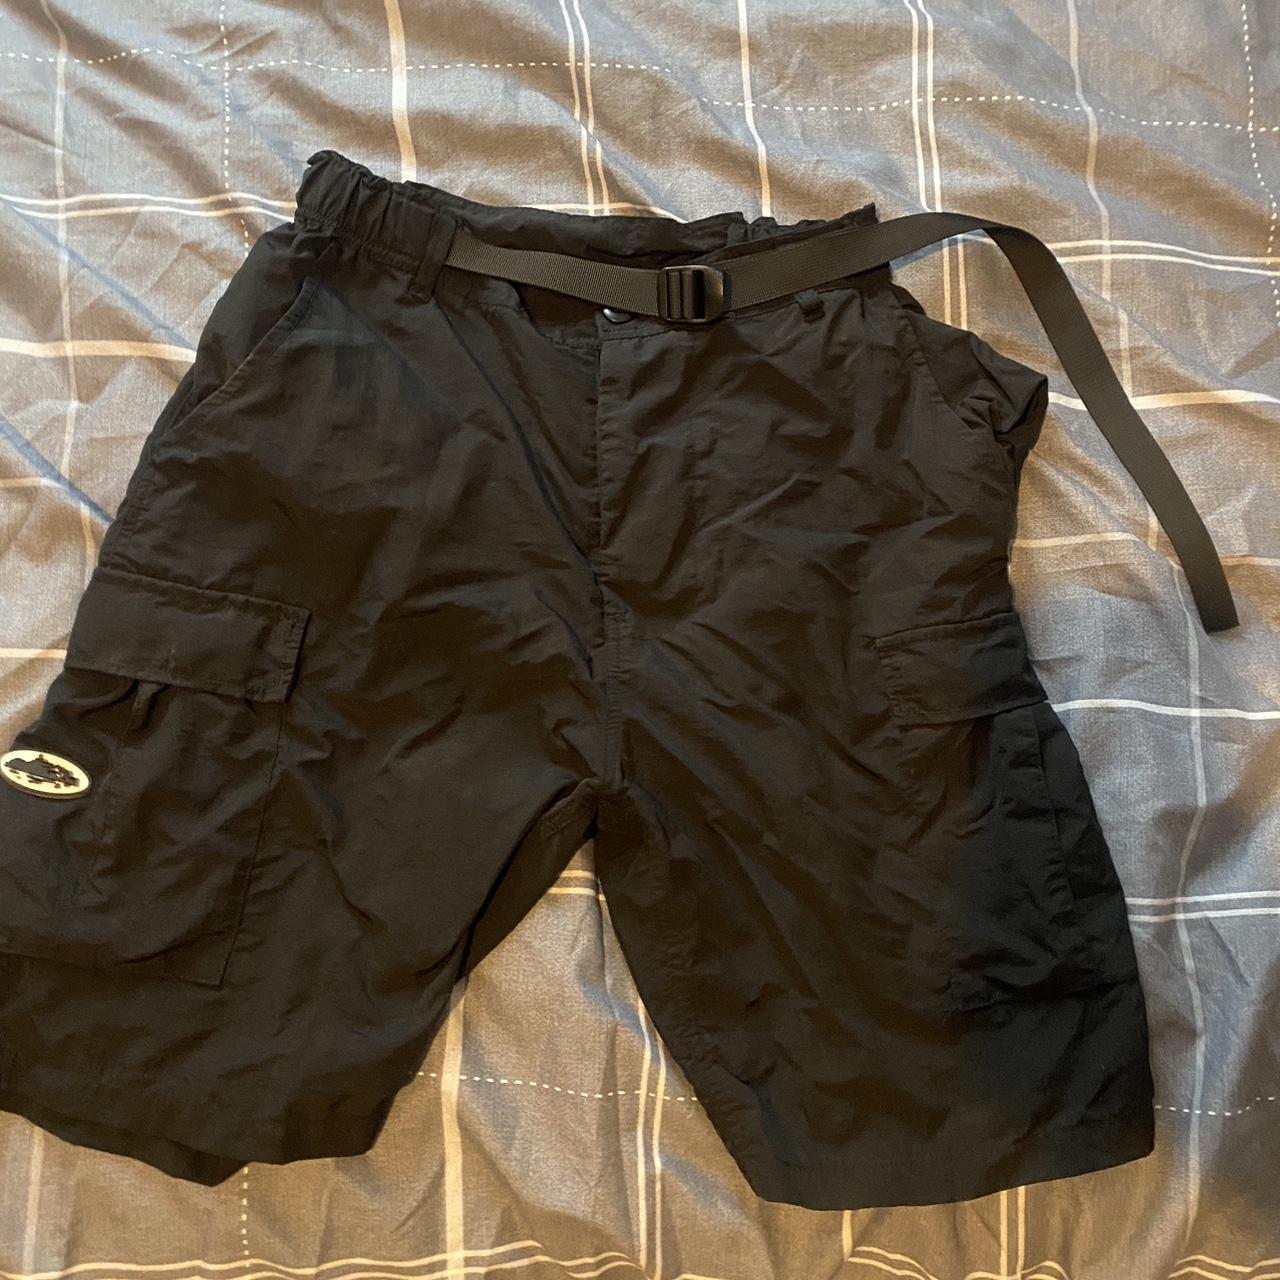 Large corteiz cargo shorts - Depop